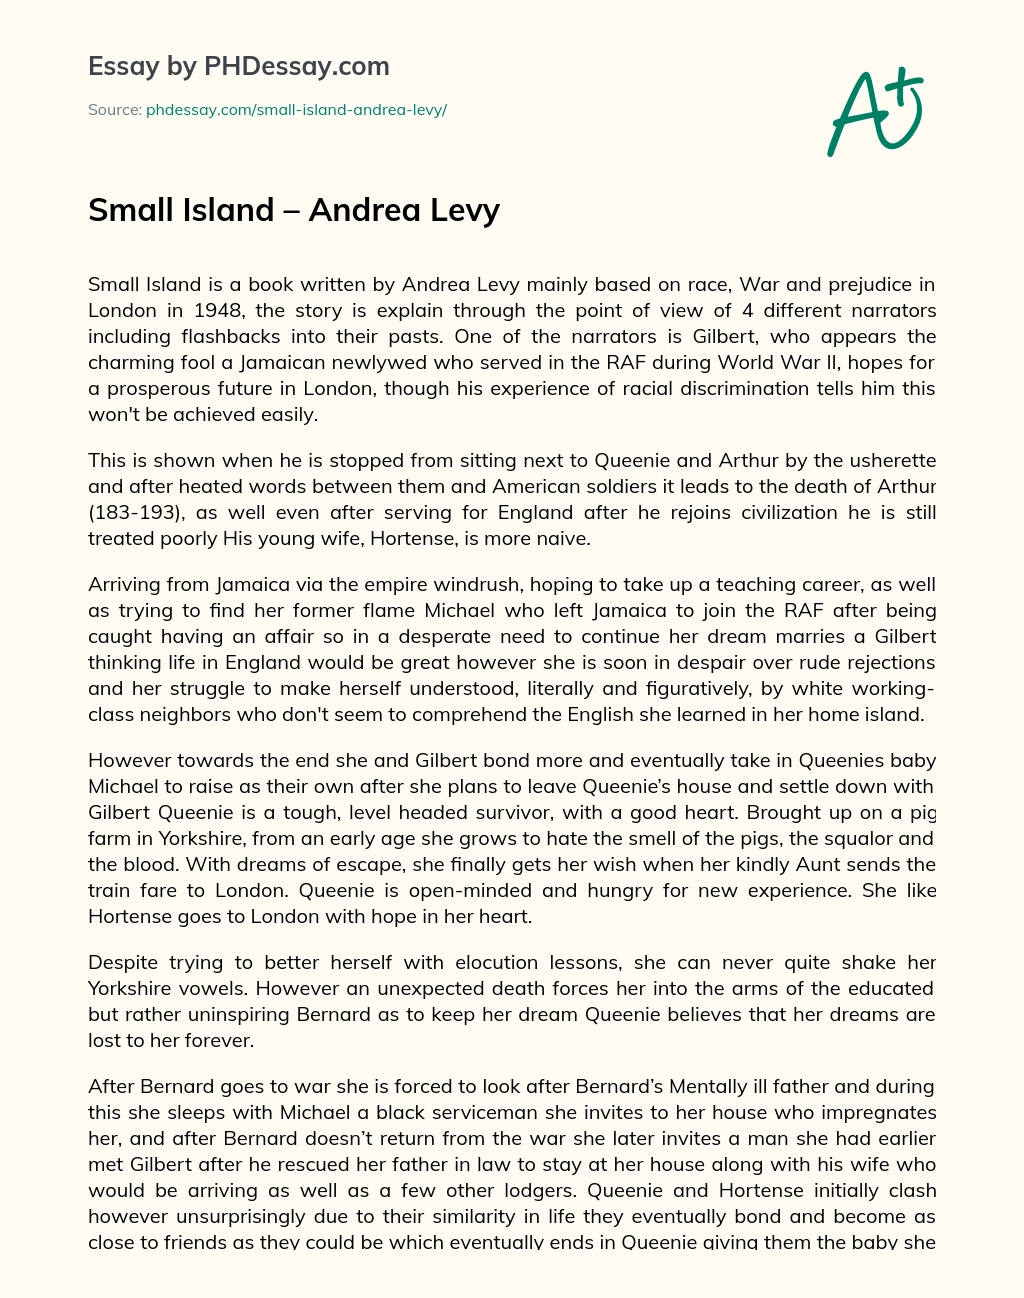 ﻿Small Island – Andrea Levy essay